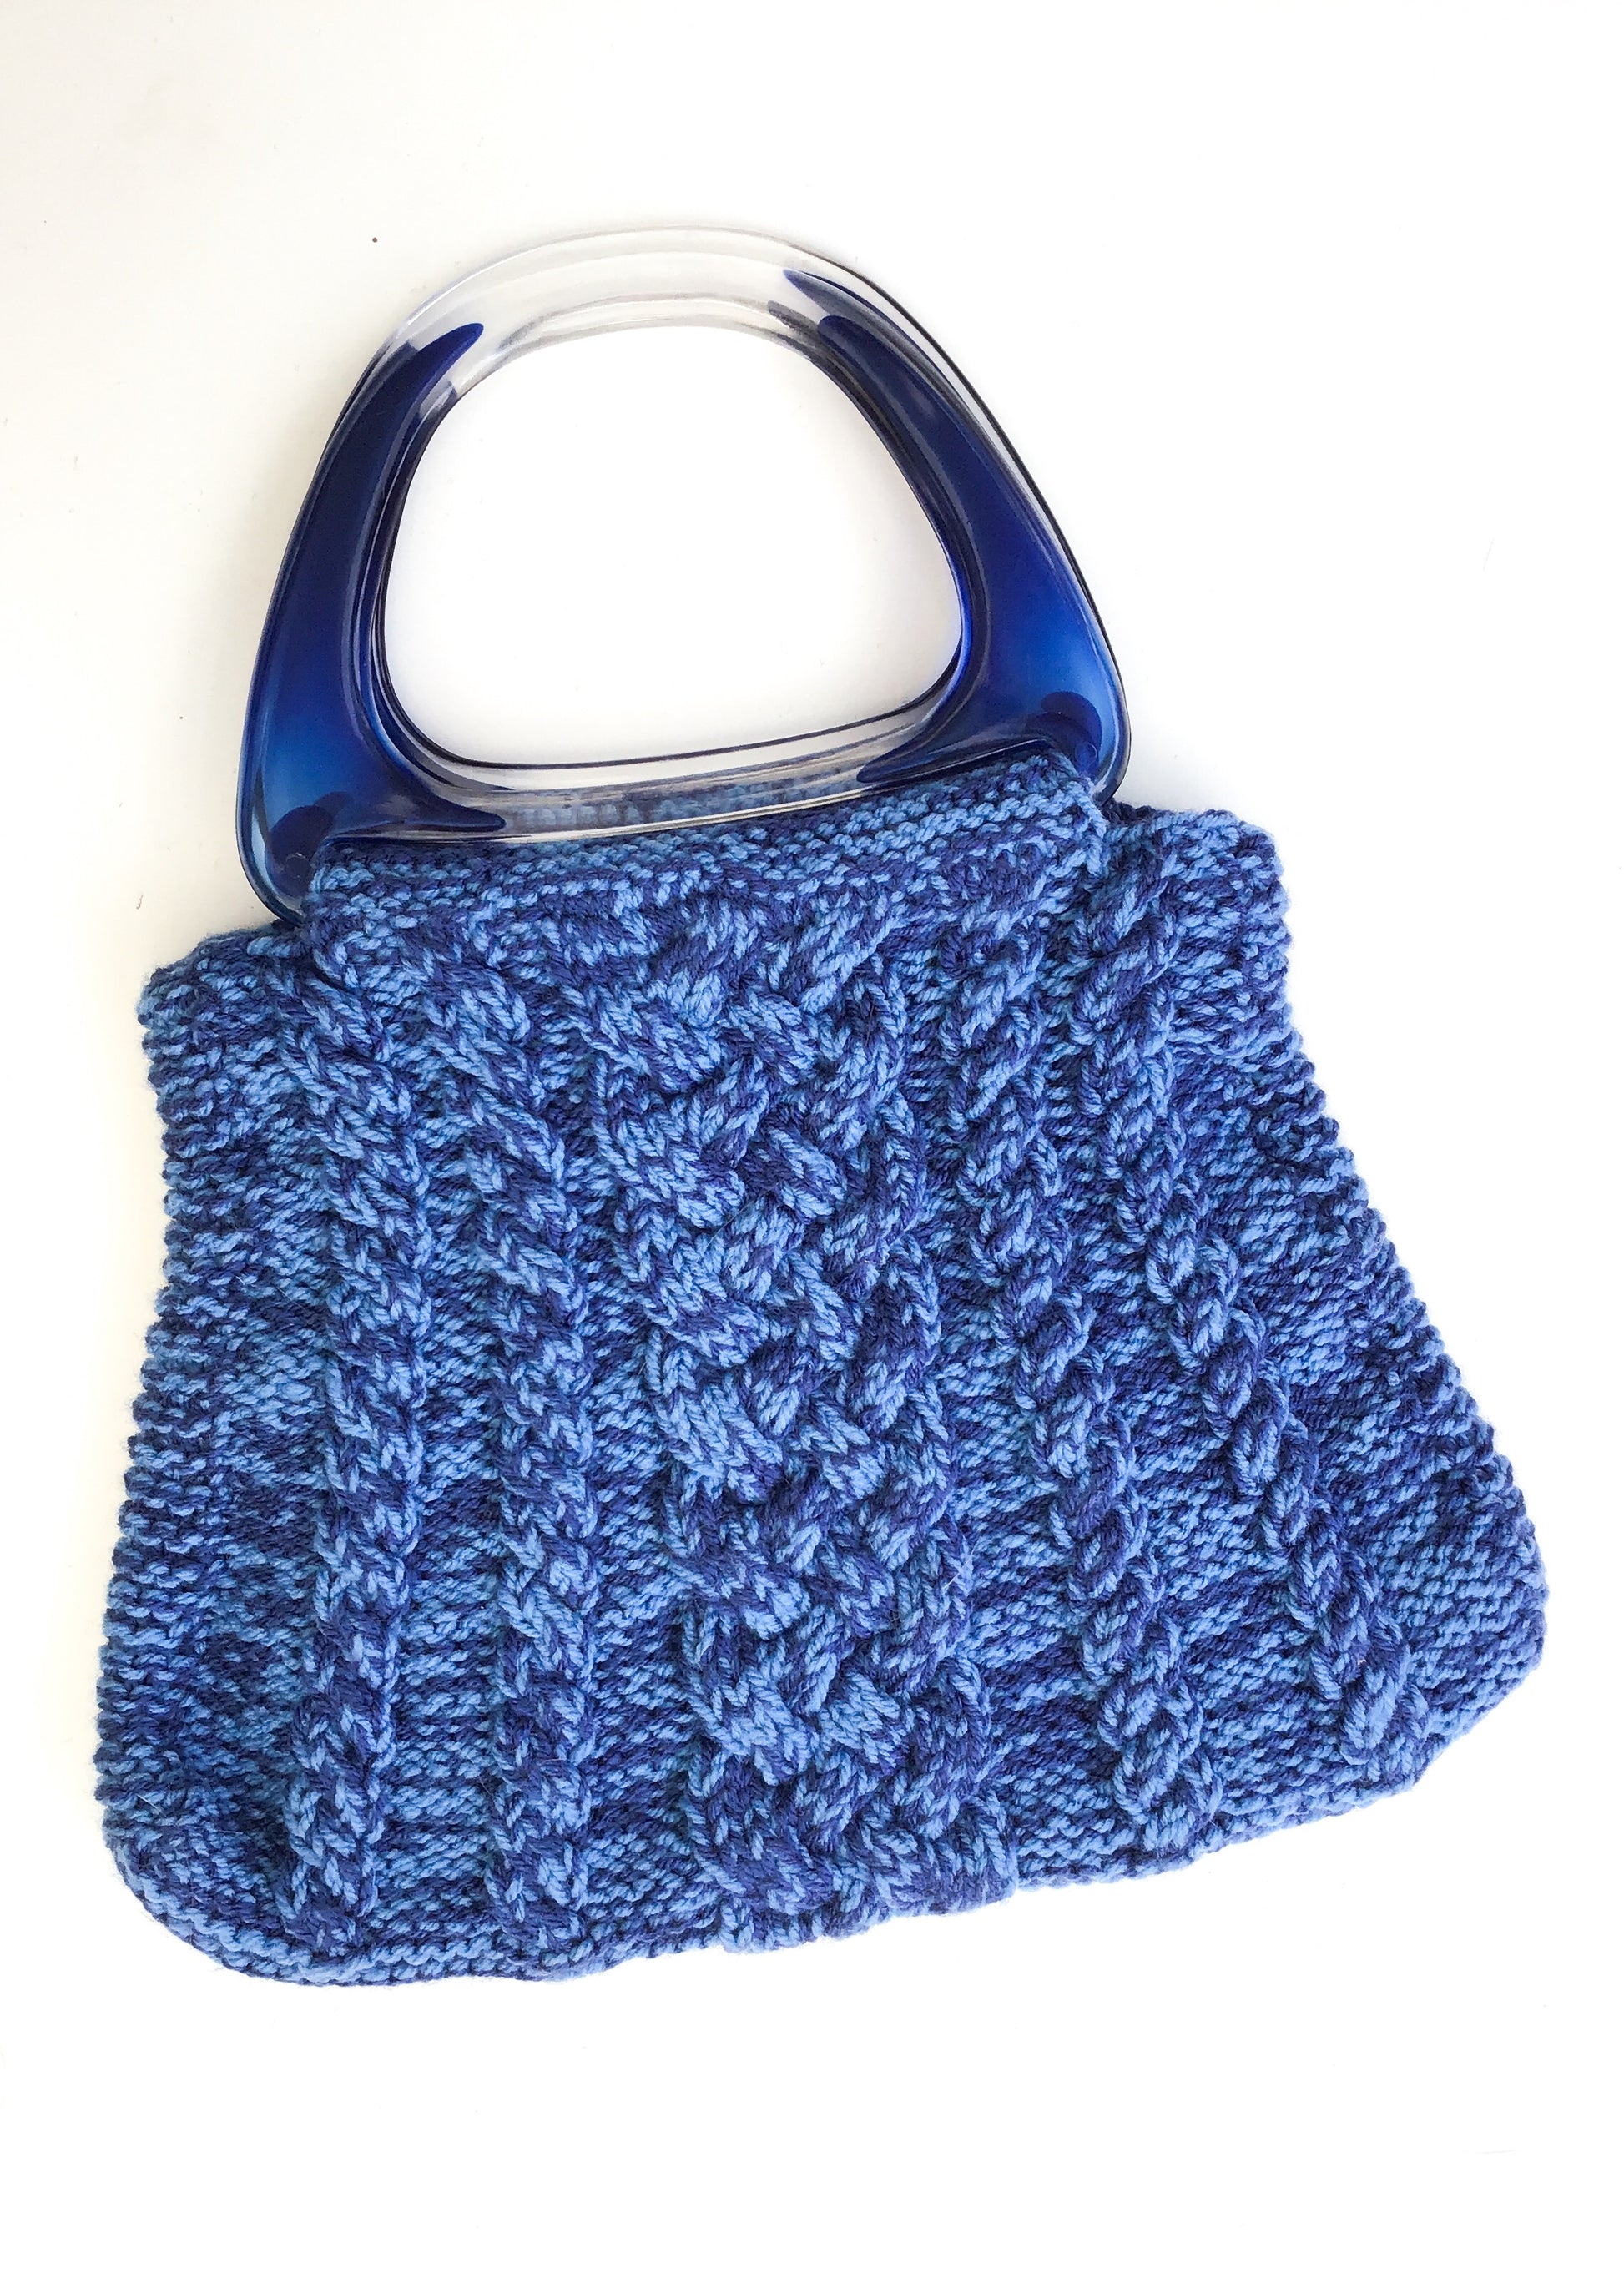 A vintage style patchwork knitting bag  ericka eckles